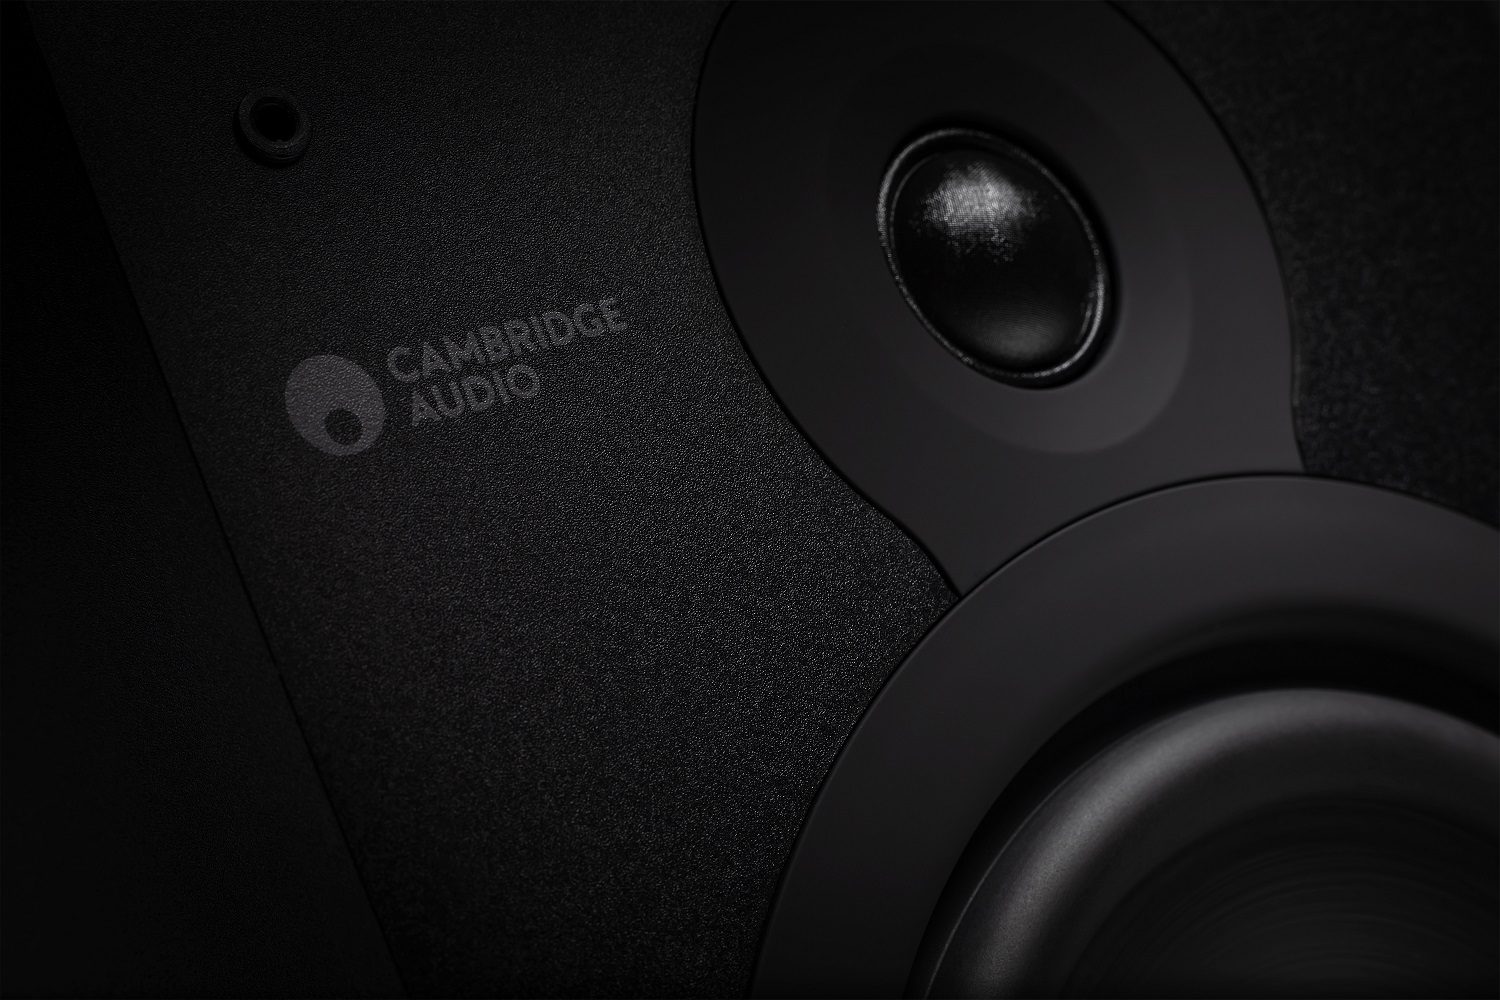 Cambridge Audio SX-60 zwart mat - Boekenplank speaker